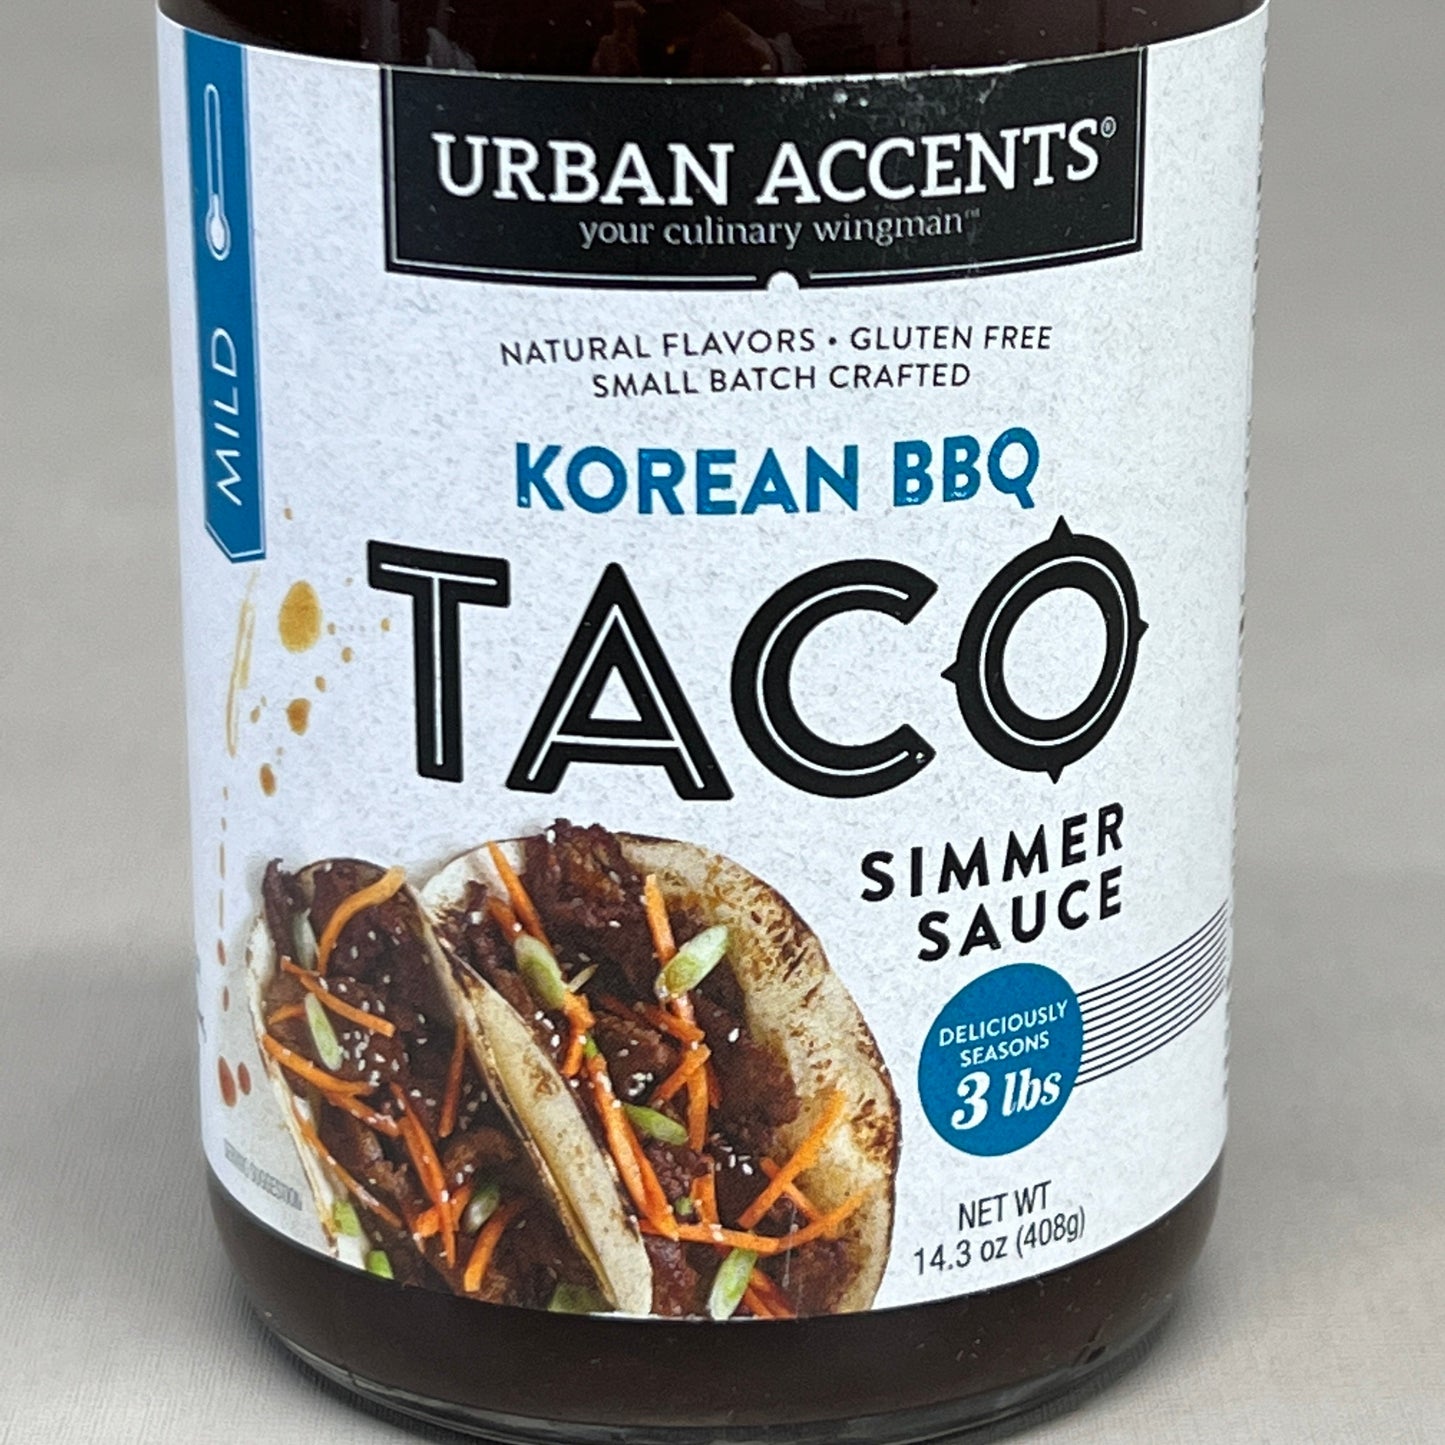 ZA@ URBAN ACCENTS 4-PACK Mild Korean Barbecue Taco Simmer Sauce 14.3 oz GF 02/24 QURA4E31 (New)